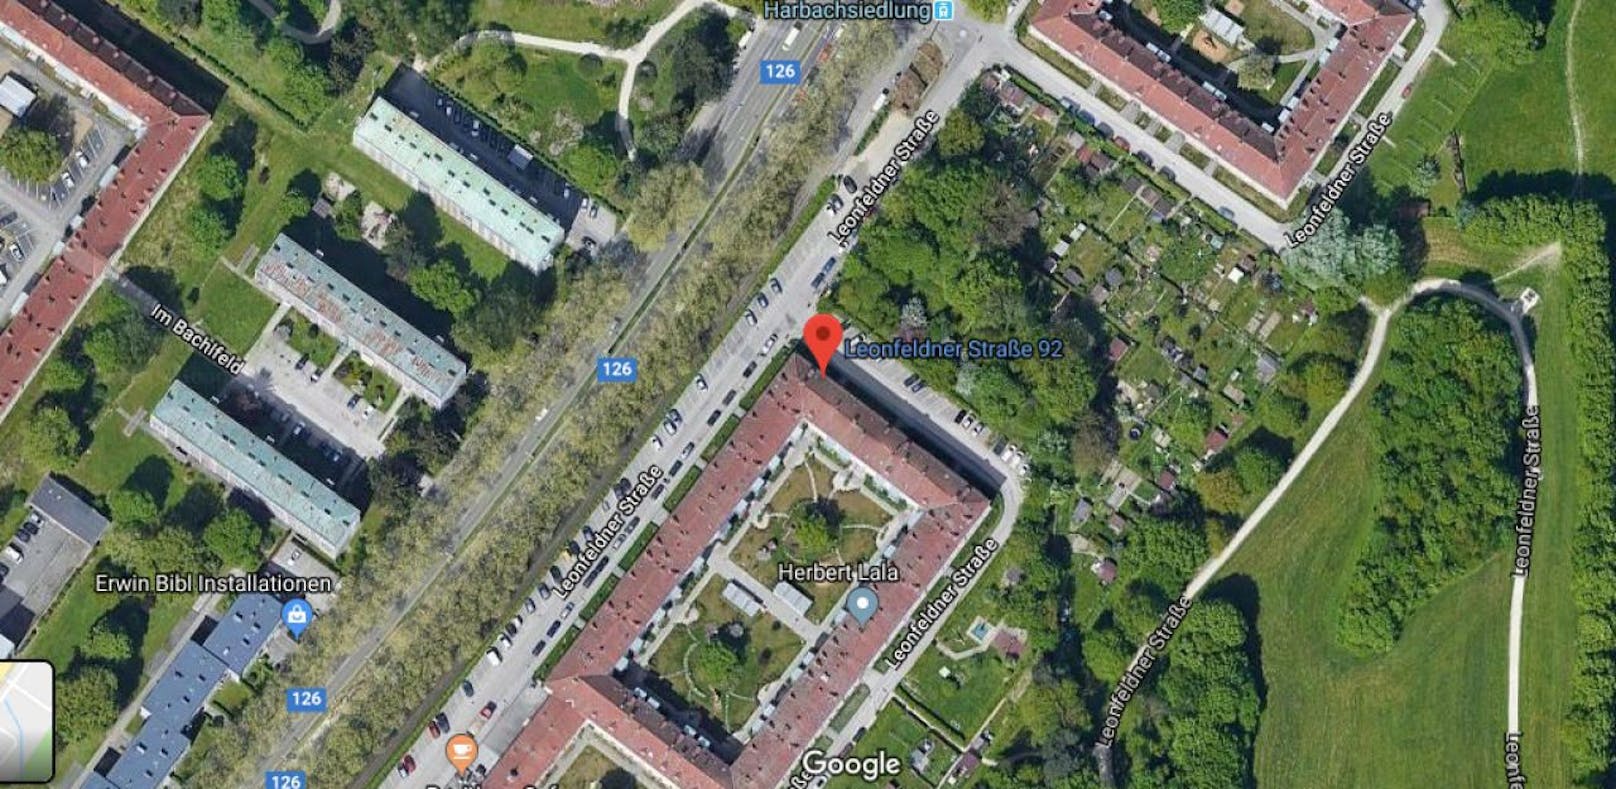 Der schreckliche Unfall passierte in der Leonfeldner Straße in Linz.